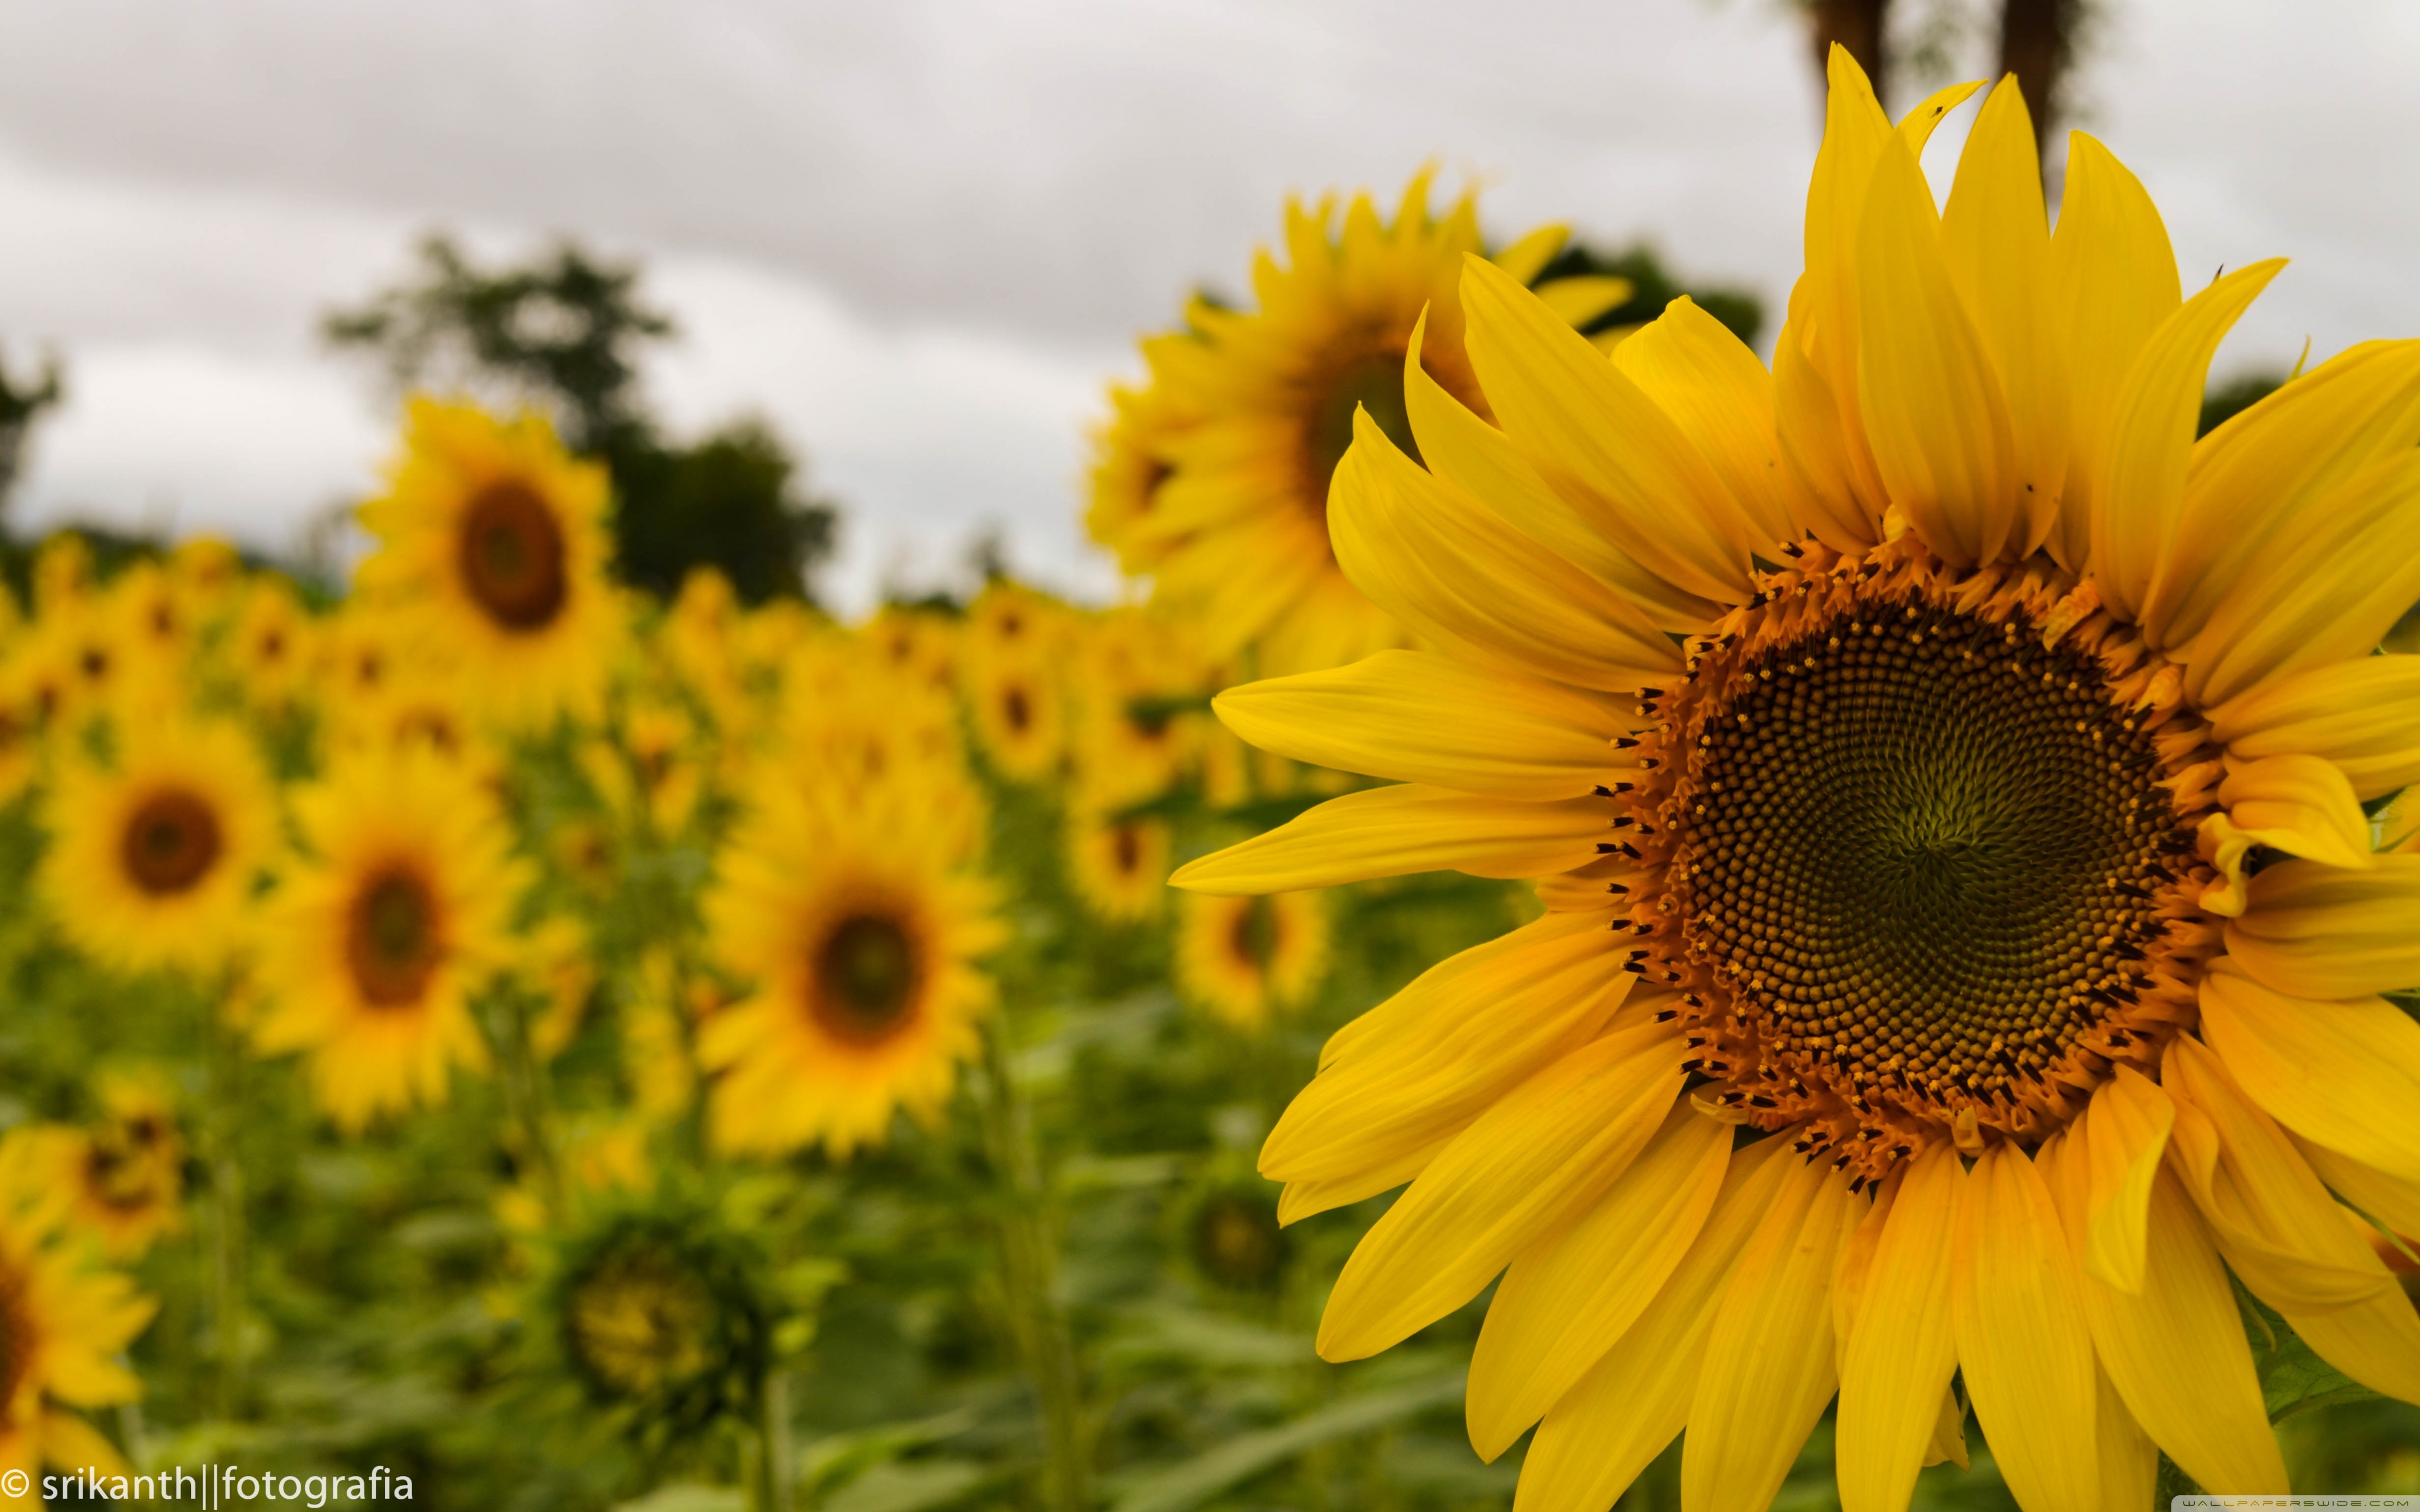 Yellow Mellow Sunflower 4k HD Desktop Wallpaper For